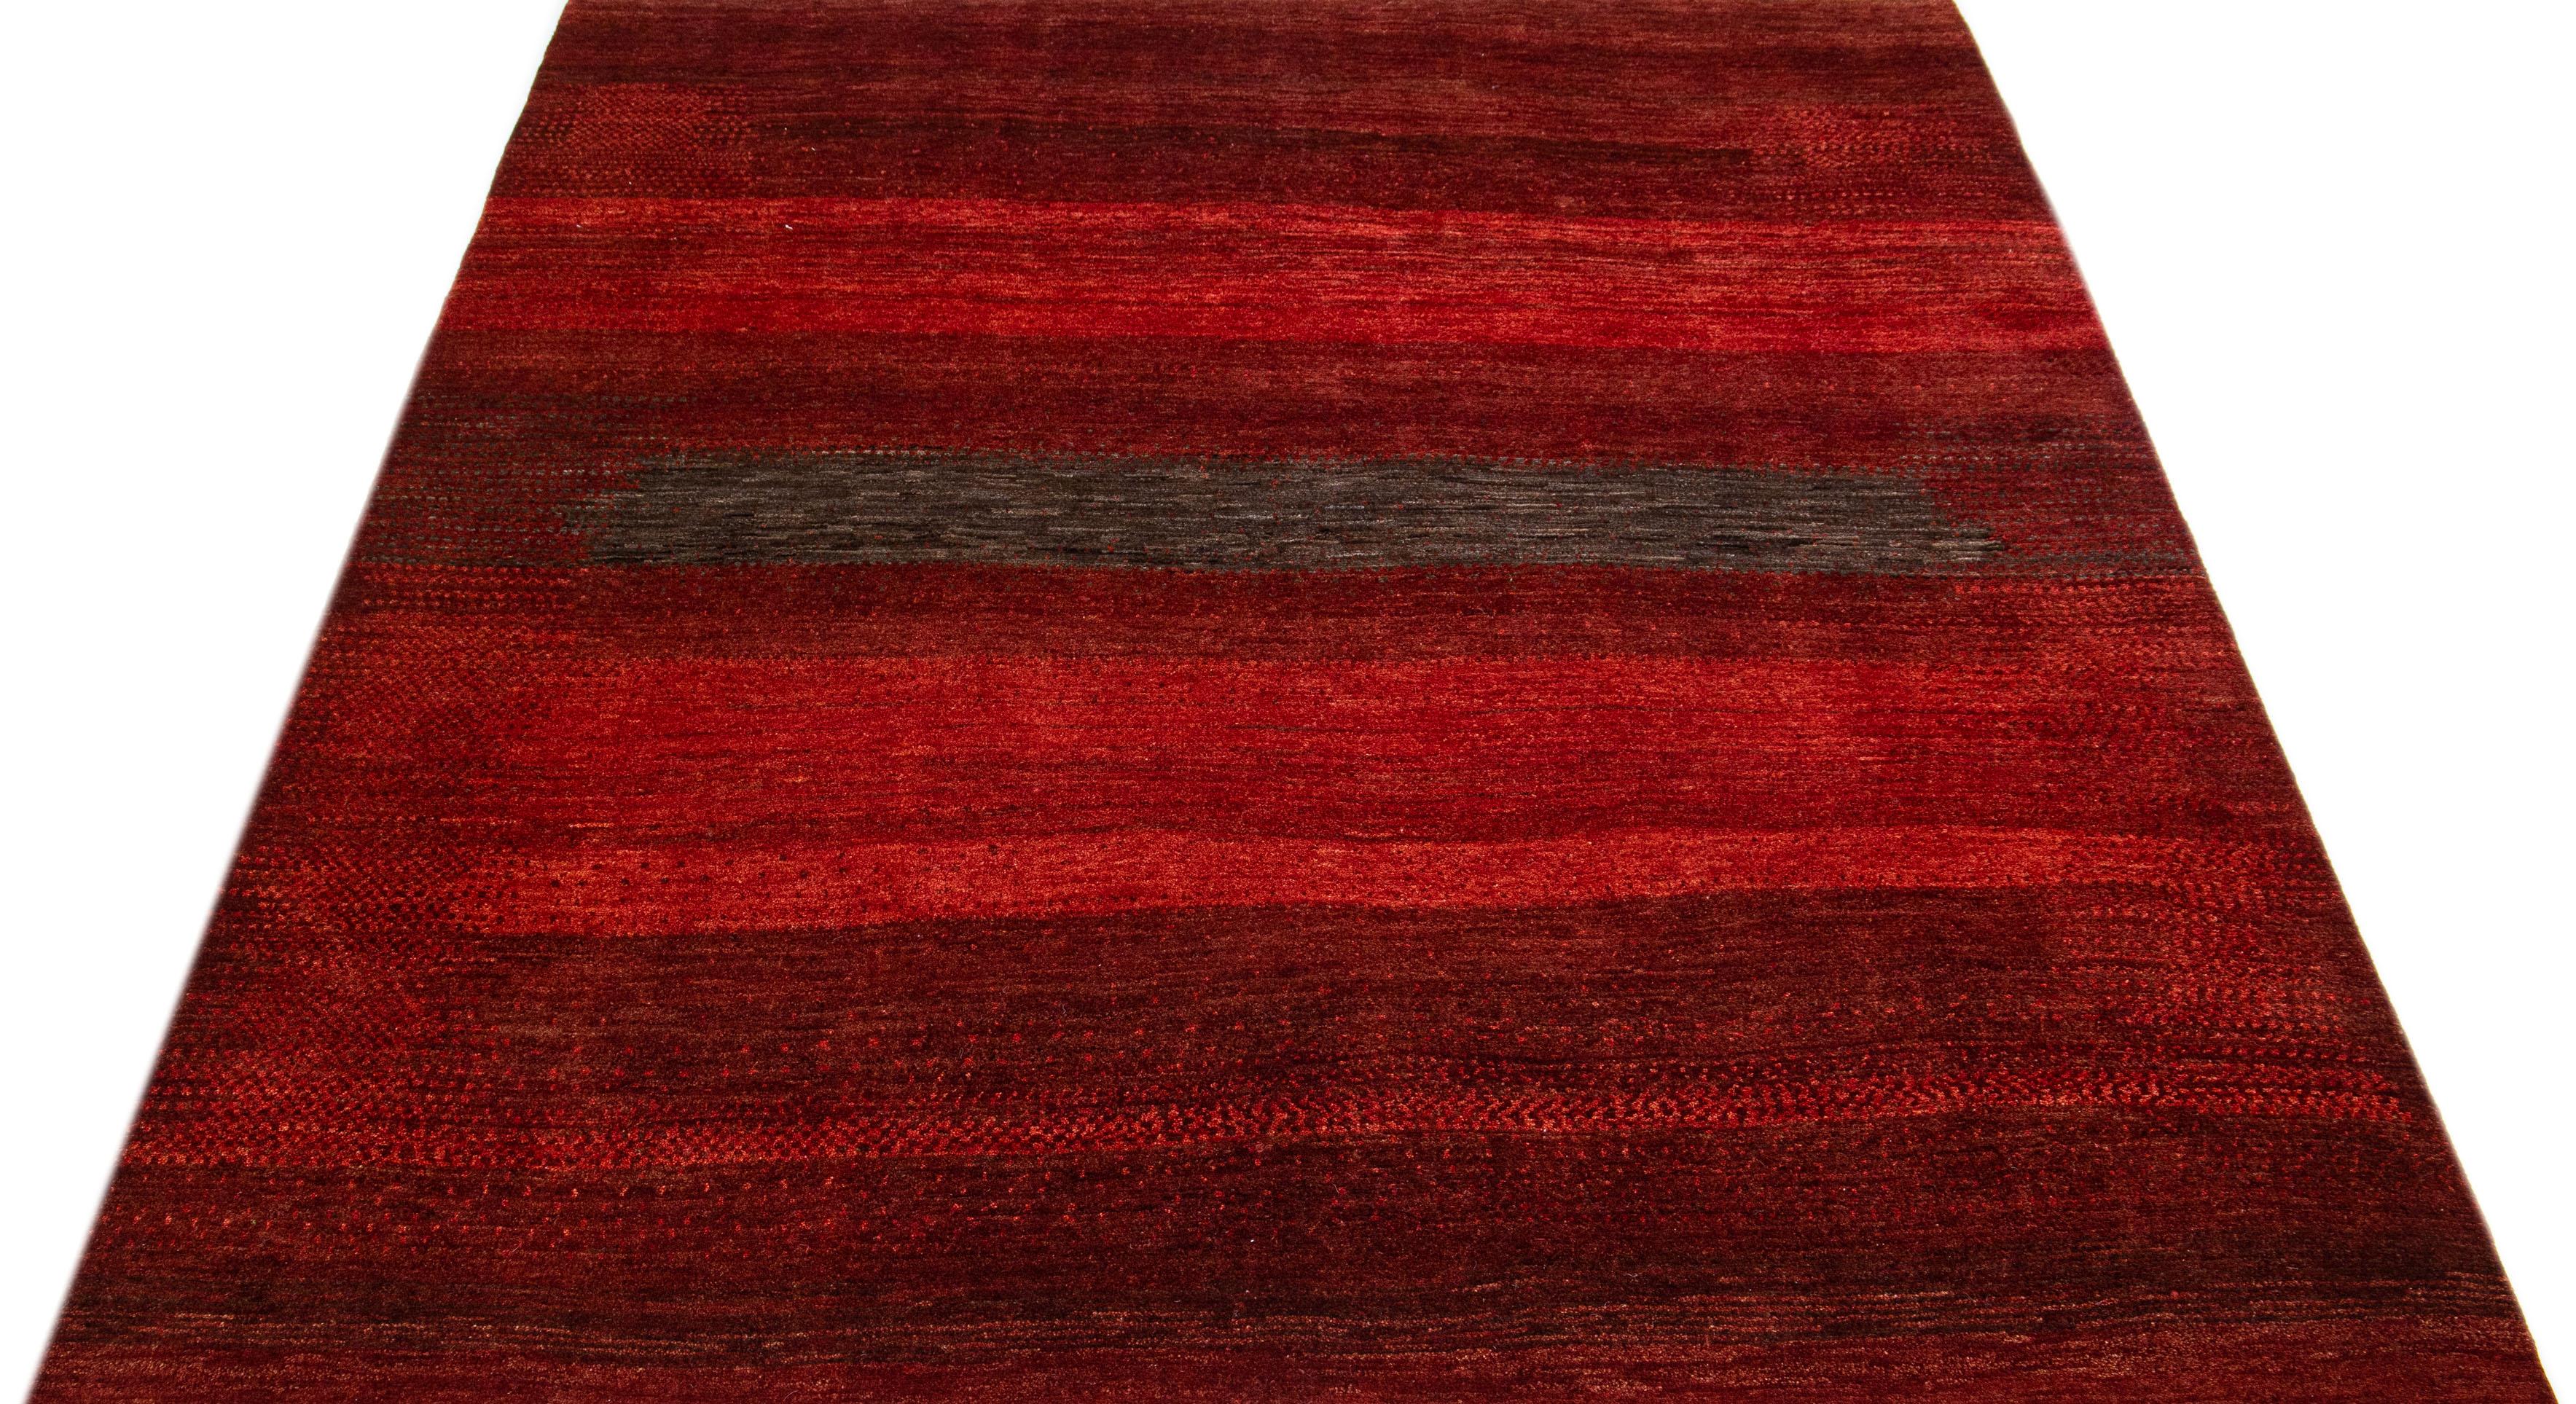 Dieser handgefertigte Wollteppich im Gabbeh-Stil zeigt eine abstrakte Ästhetik mit braunen Akzenten auf einem leuchtend roten Farbfeld.

Dieser Teppich misst 7'8